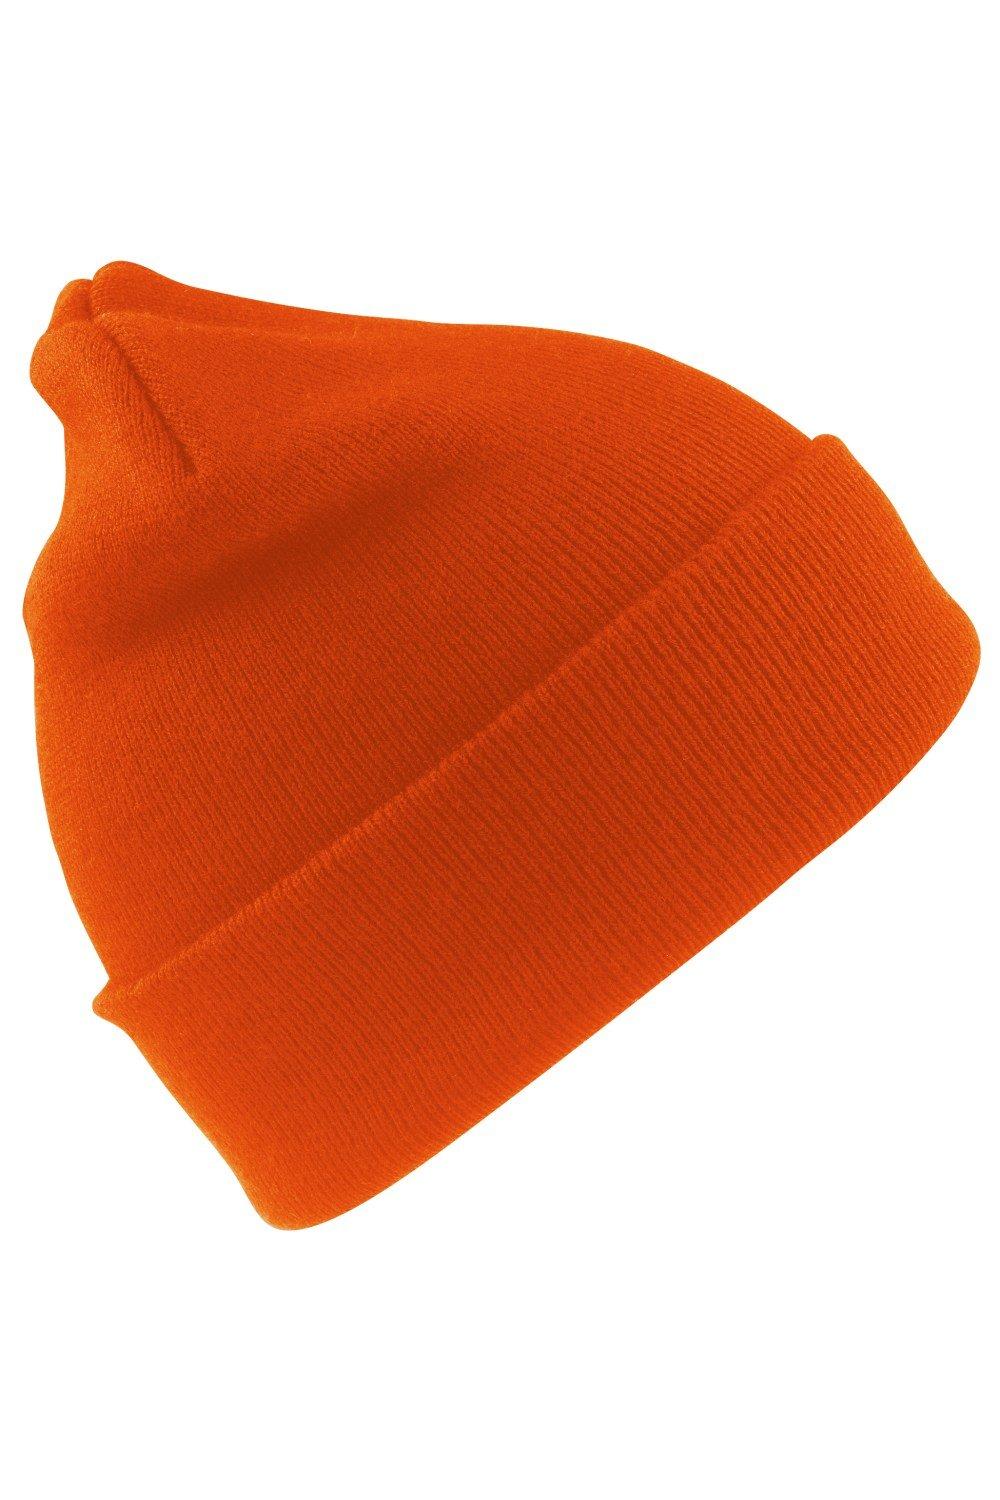 Шерстяная термолыжная/зимняя шапка с утеплителем Thinsulate 3M Result, оранжевый пряжа семеновская пряжа natasha 215 георгин 5 шт по 100 г